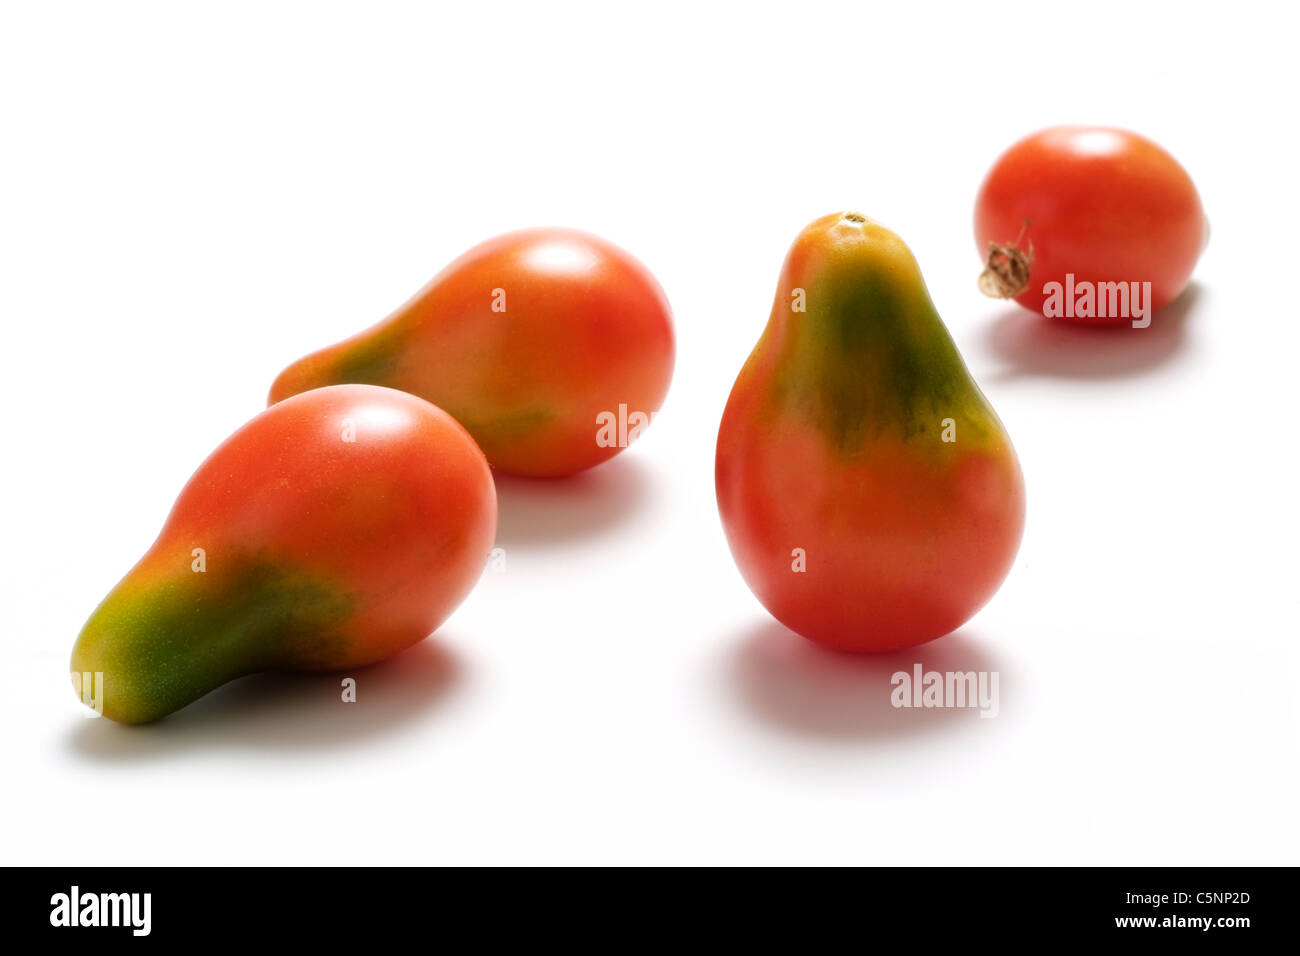 Variétés de tomates : tomate cerise rouge en forme de poire Banque D'Images